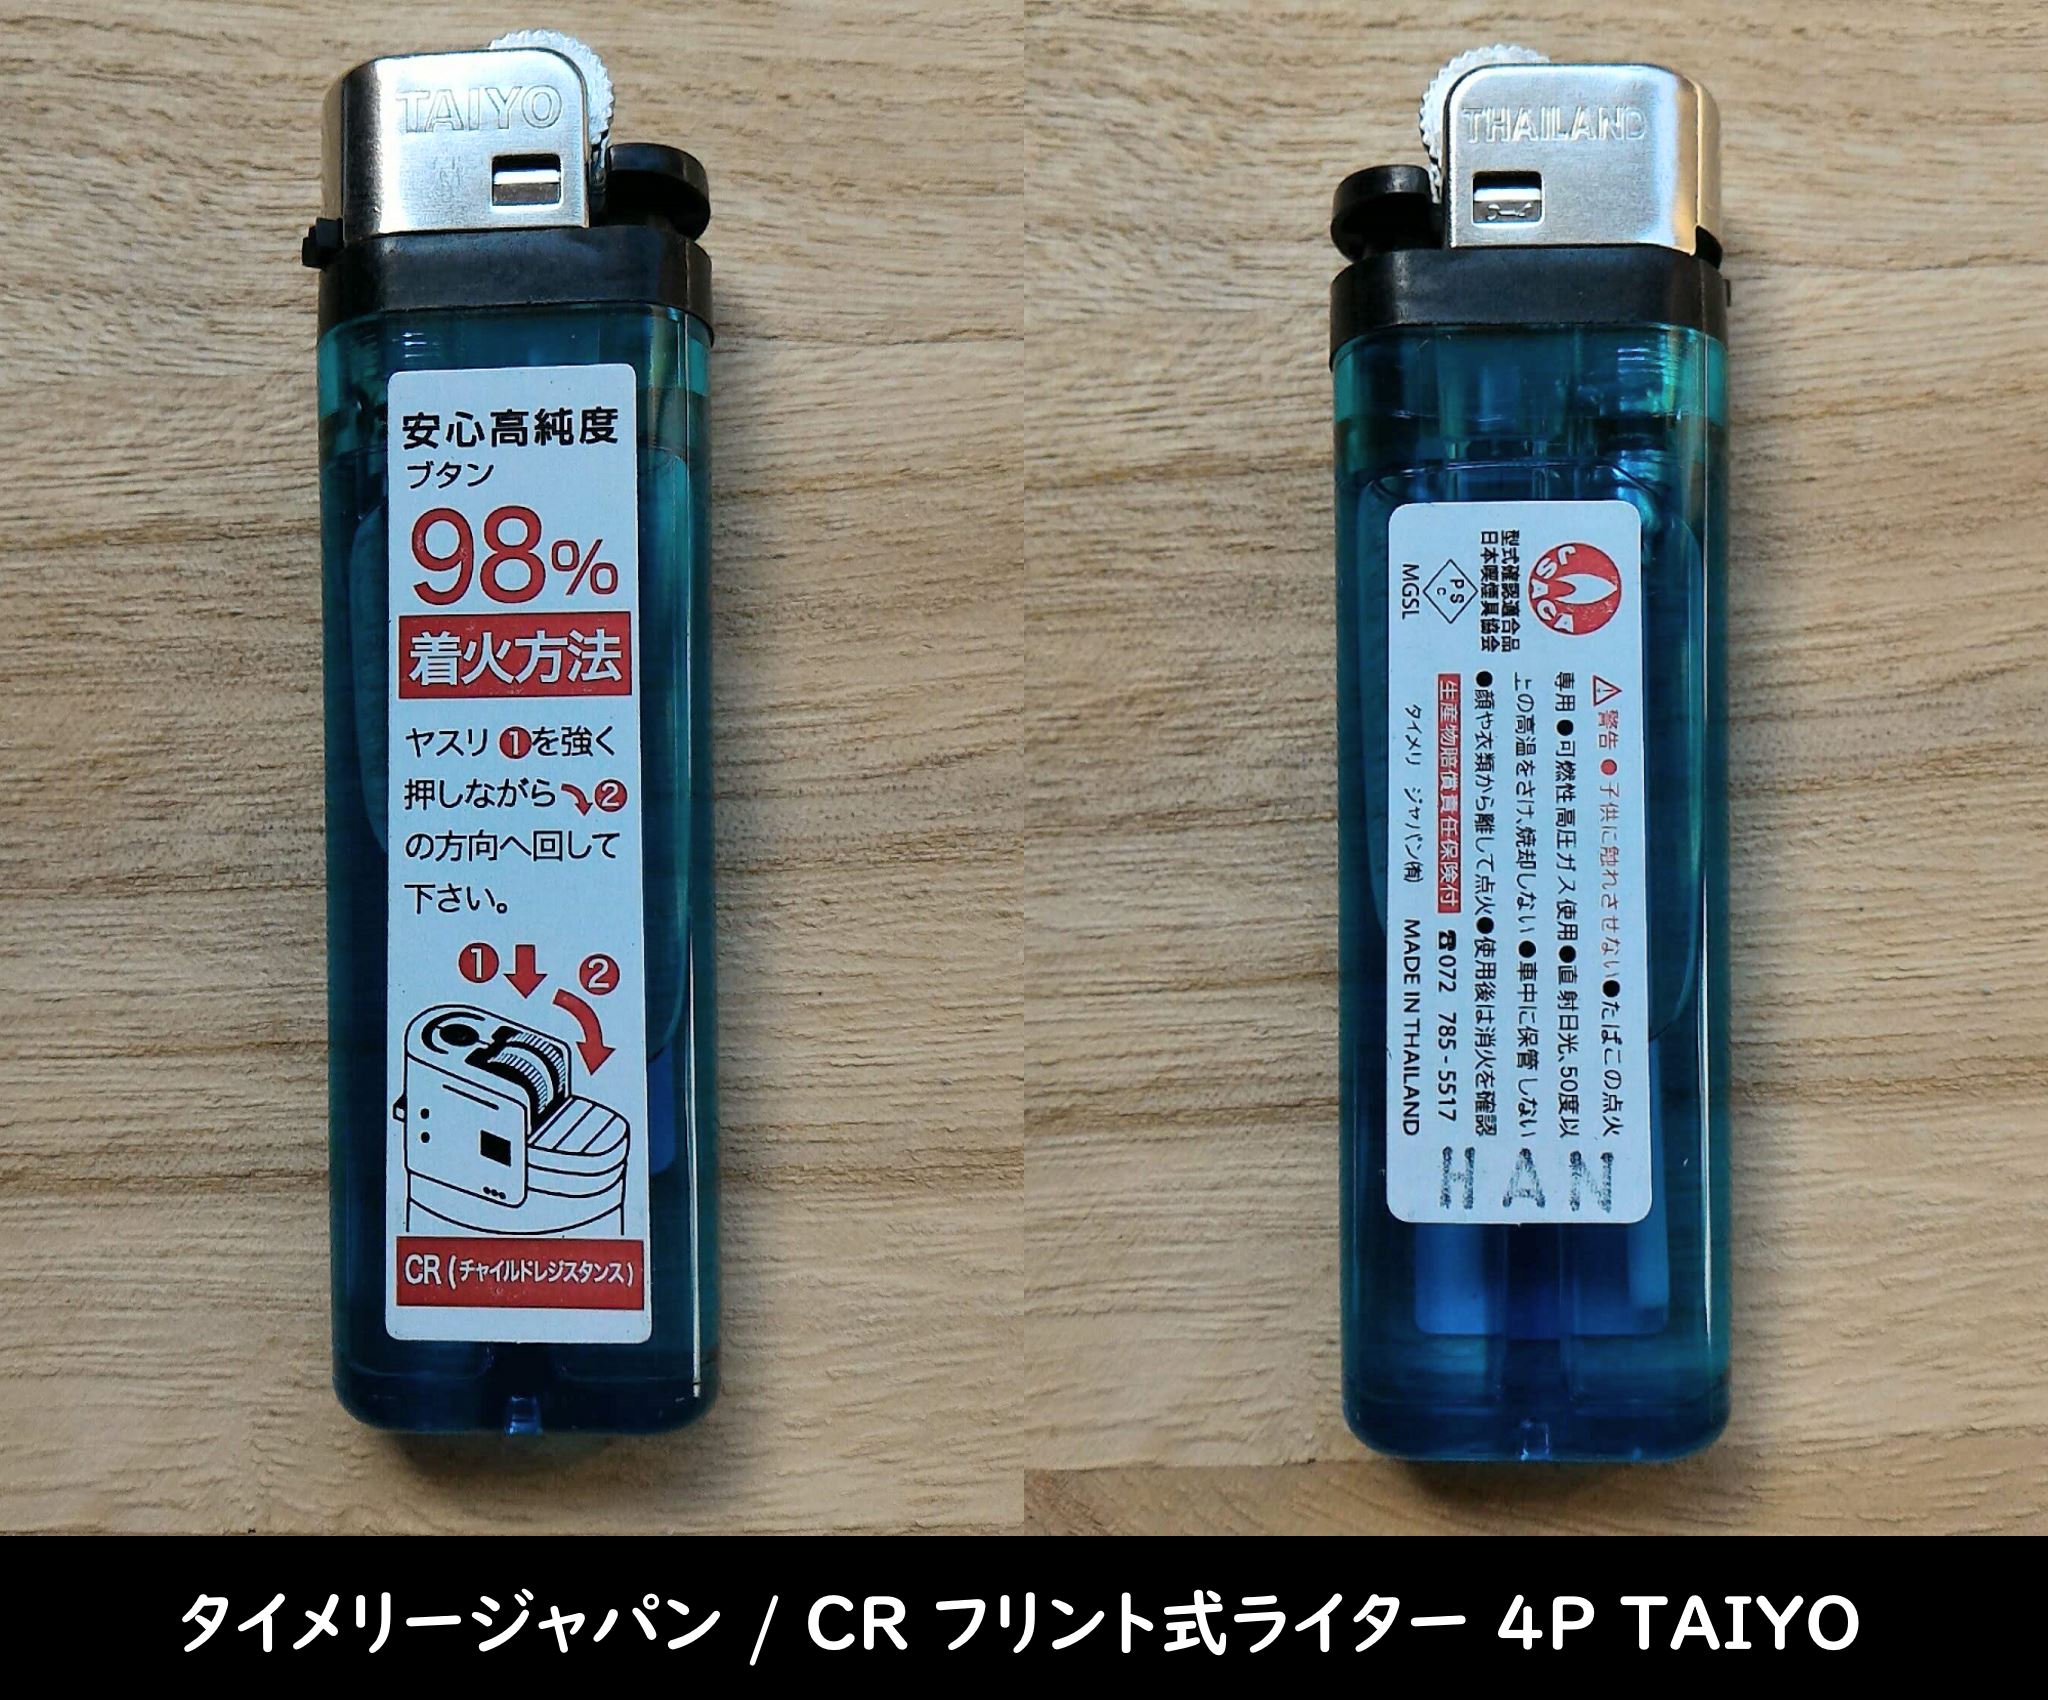 タイメリージャパン / CR フリント式ライター 4P TAIYO の個体